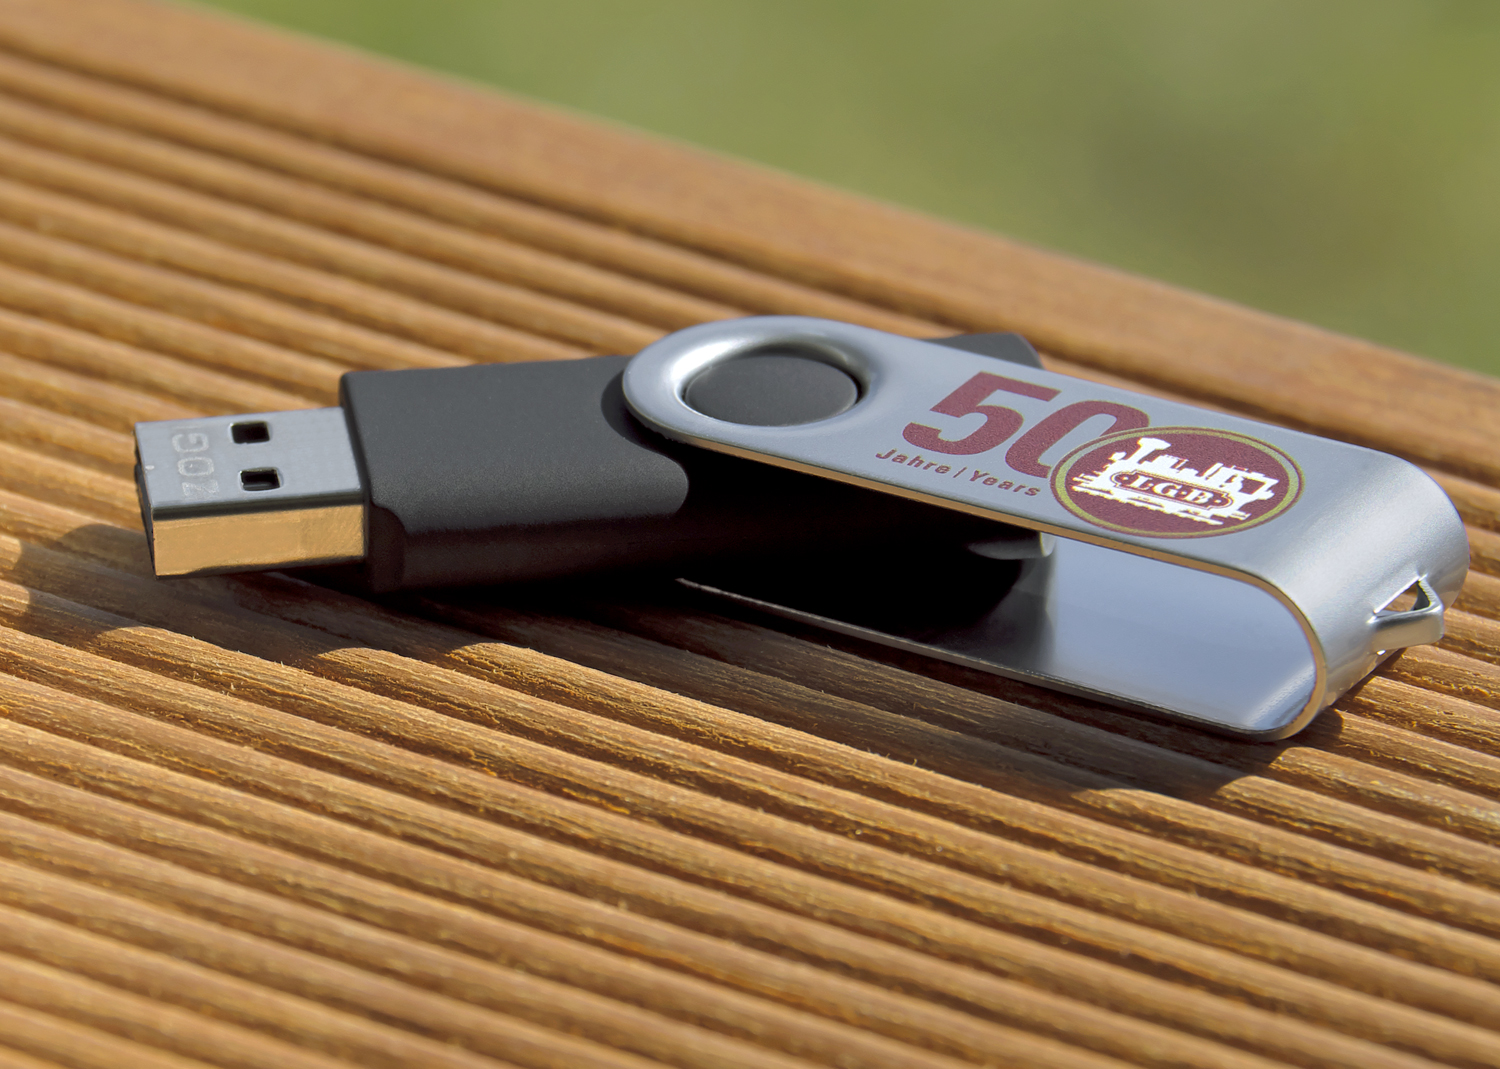 USB-Stick "50 Jahre LGB" Schwarz-silber mit "50 Jahre LGB" Logo und 4GB Speicherkapazitt